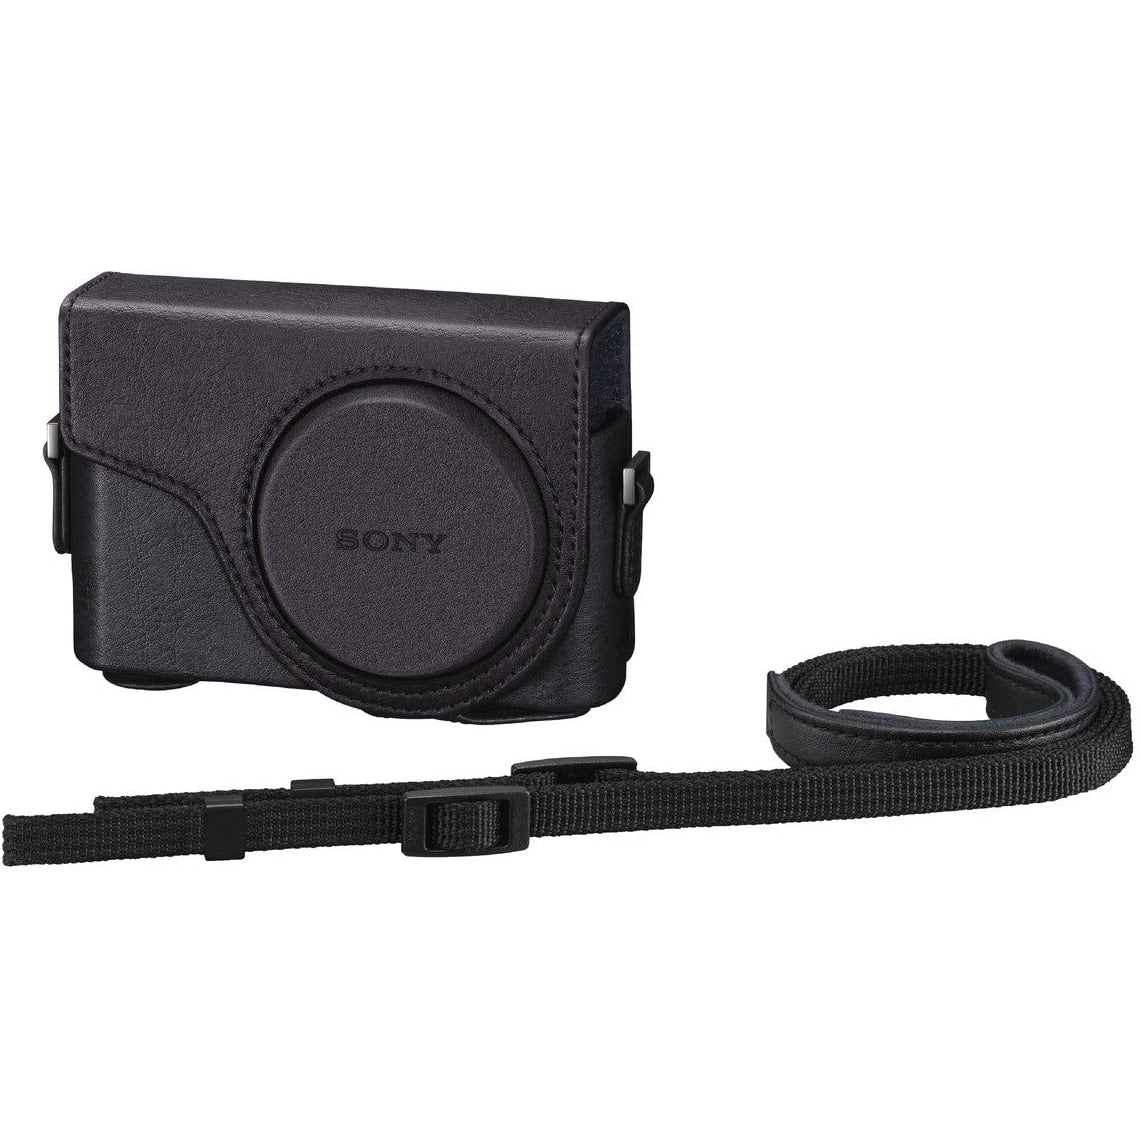 Sony Cyber-Shot Jacket Case LCJ-WD Protective Camera Case